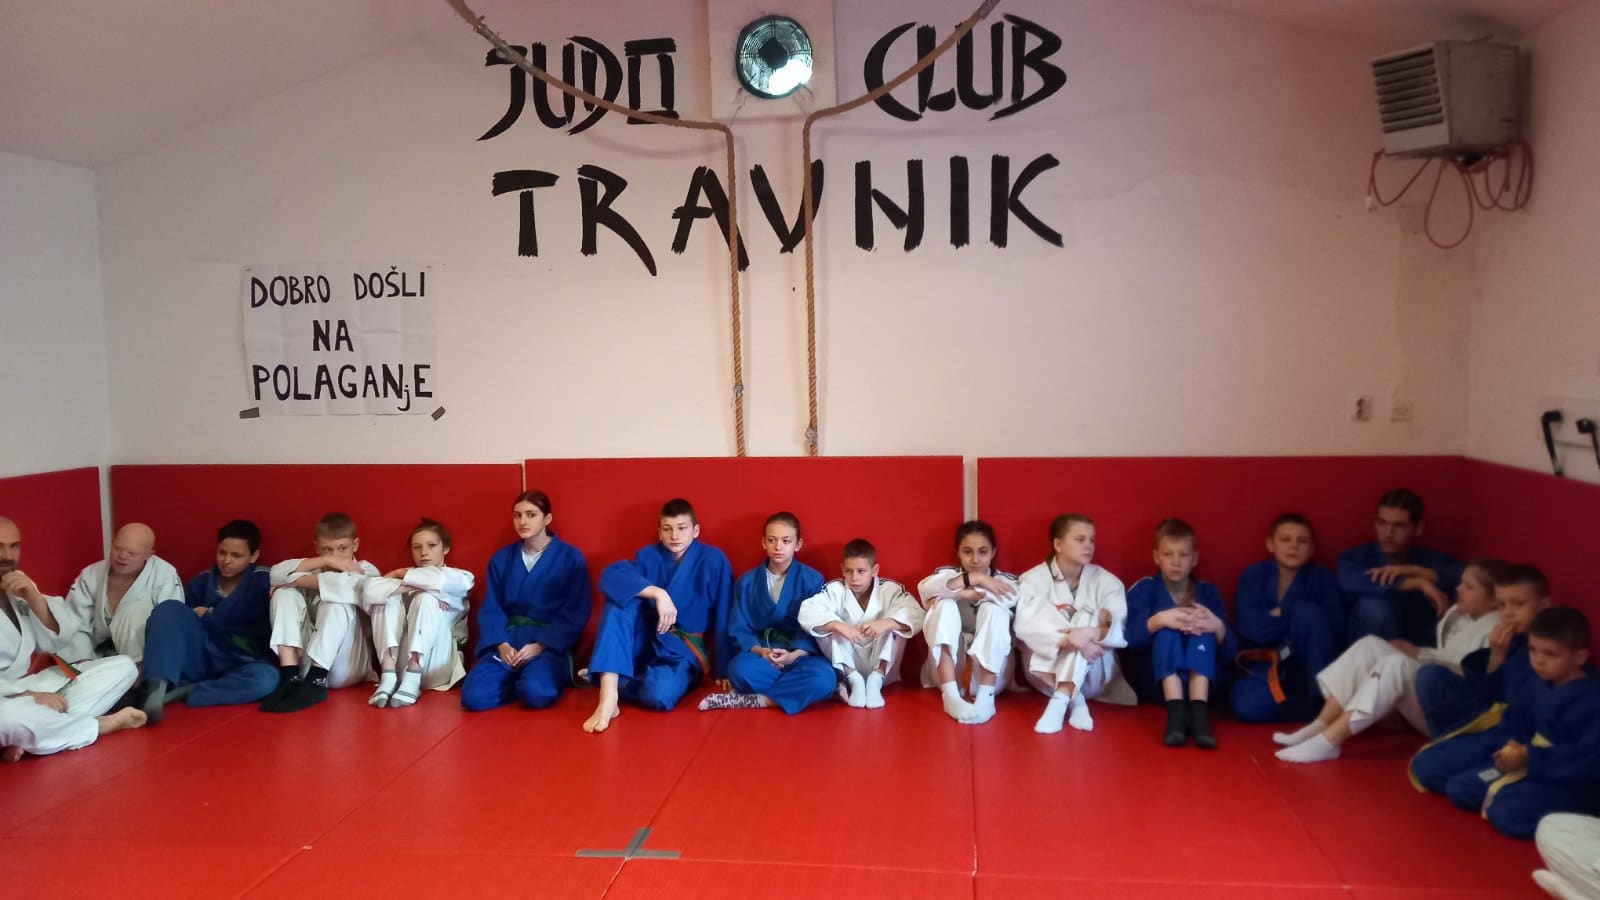 Održano polaganje za pojaseve u Judo klubu Travnik (FOTO)